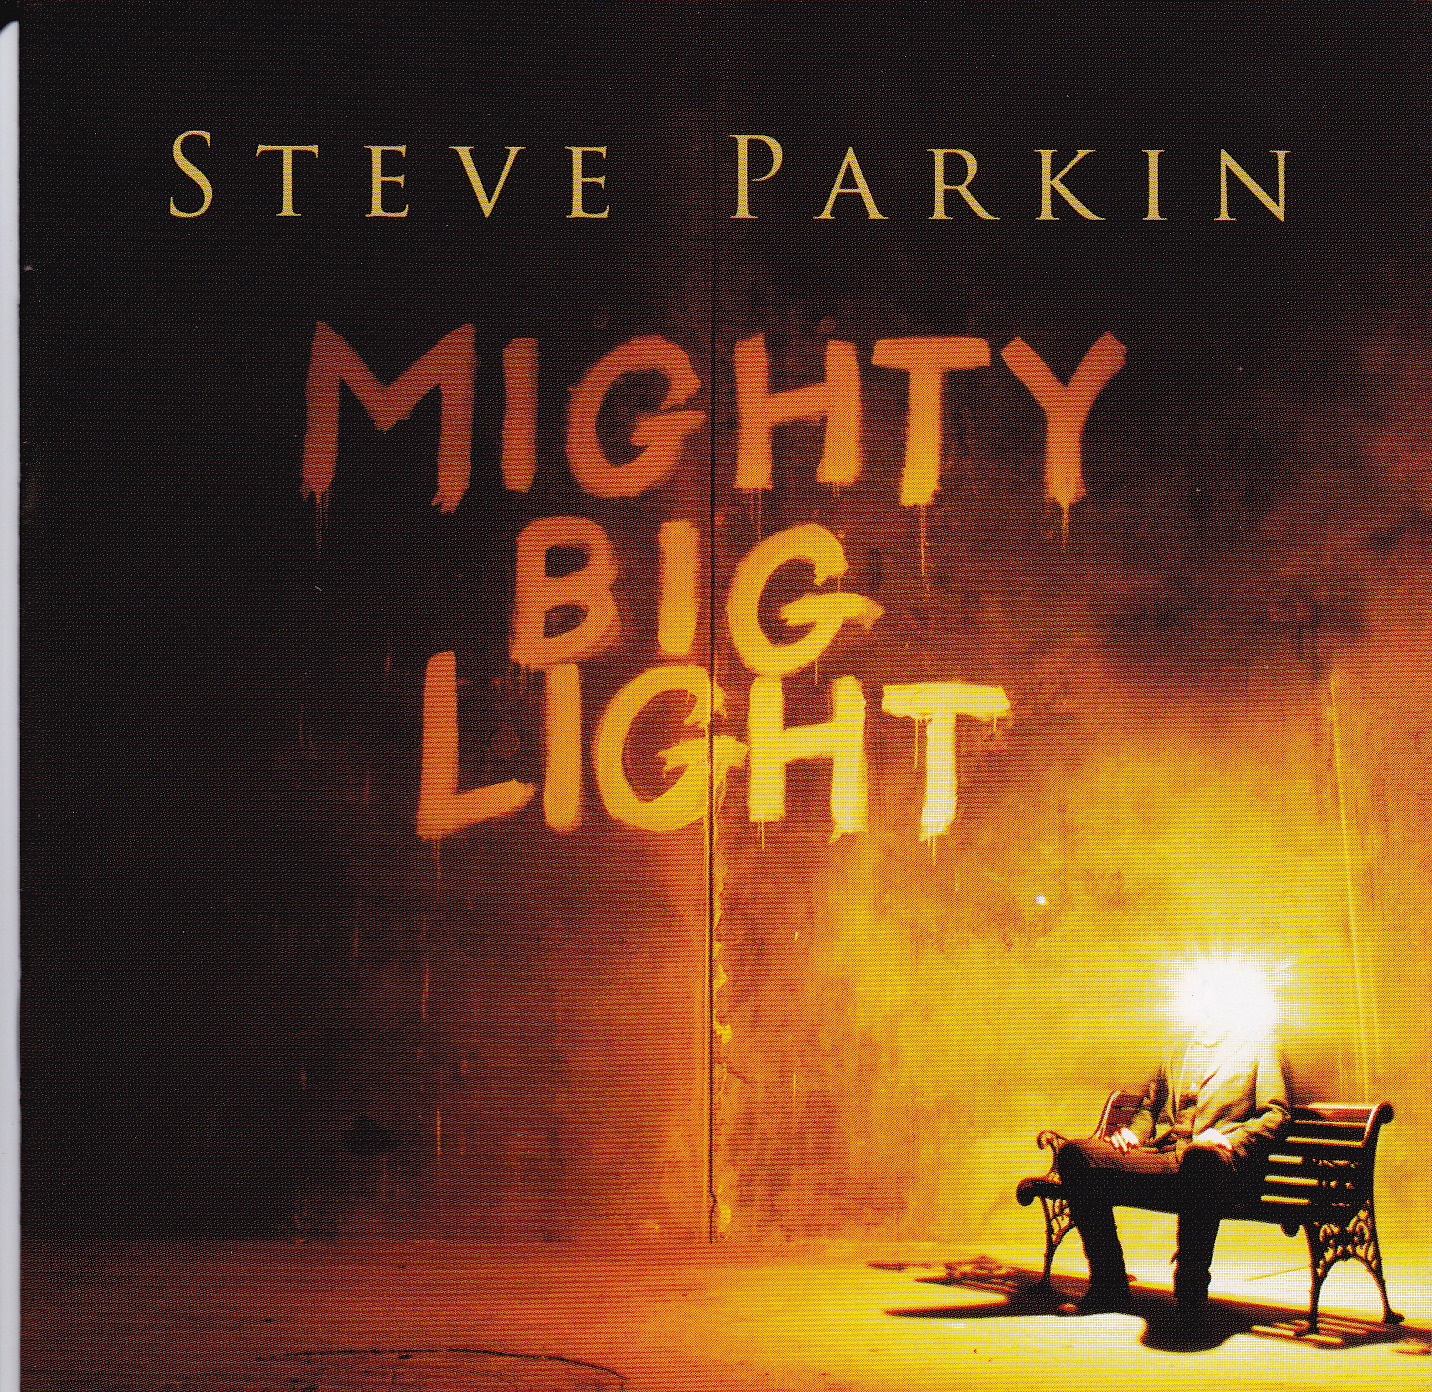 steve-parkin-album-cover.jpg